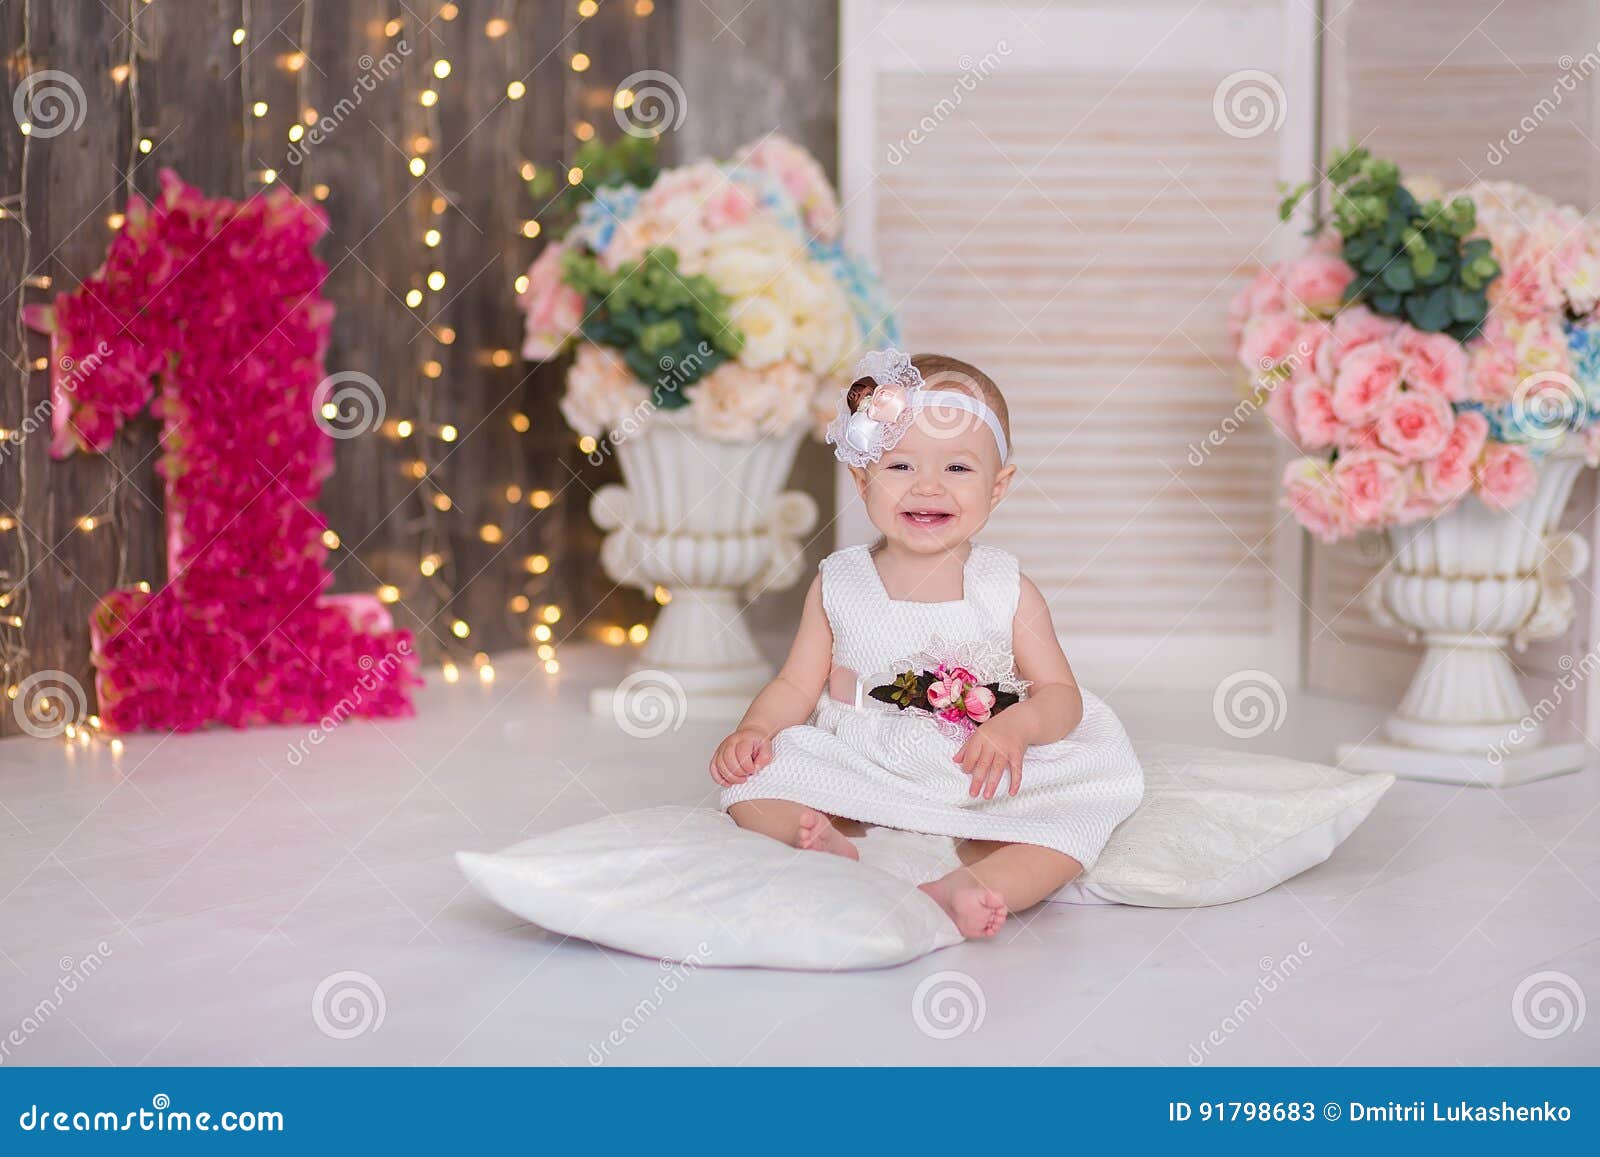 Retrato de una niña de 2 años aislado sobre fondo blanco.